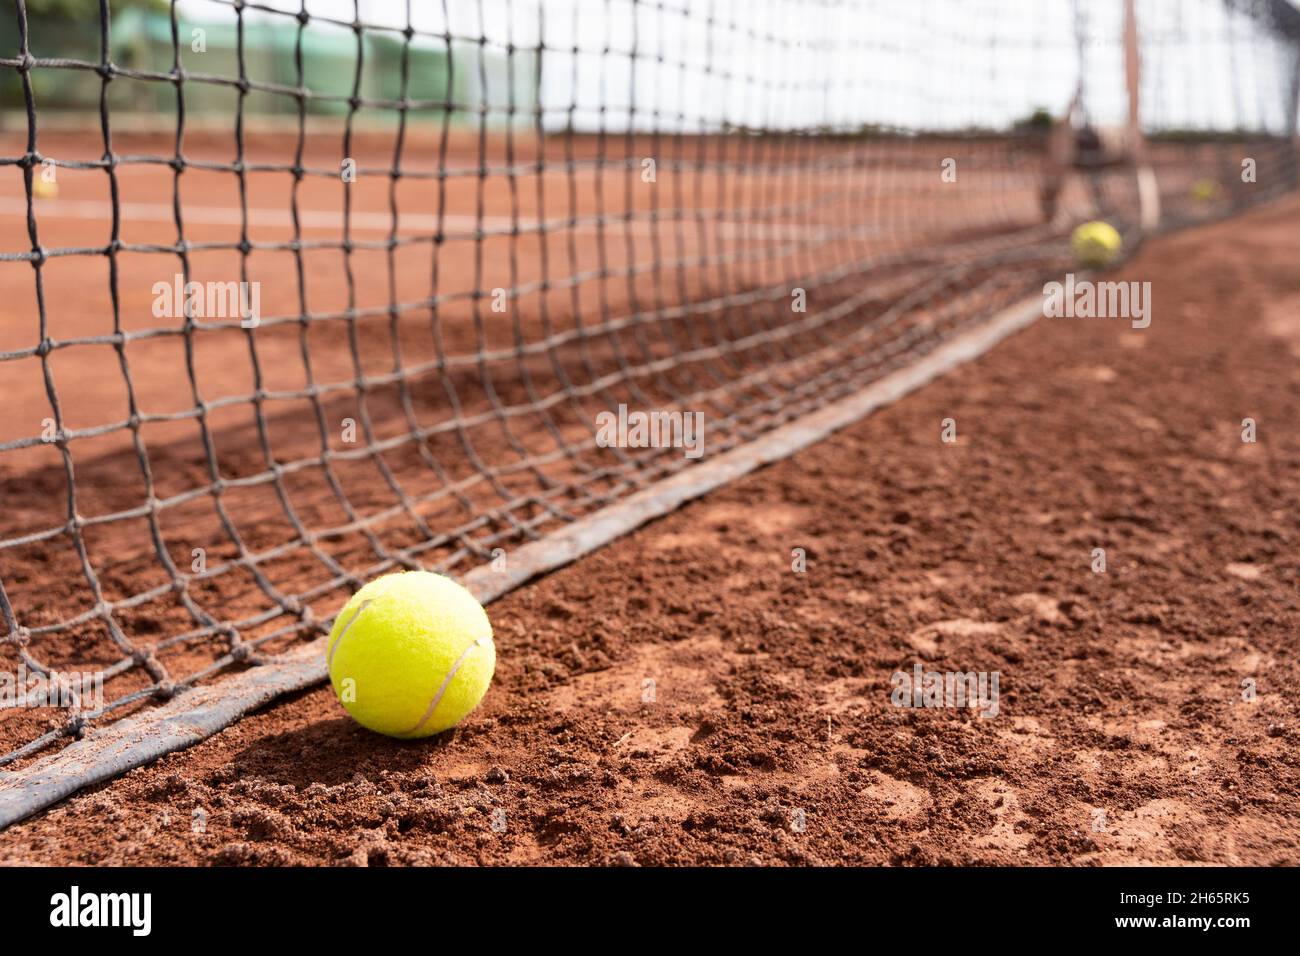 Gros plan sur une balle de tennis sur un terrain en argile humide près du filet.Entraînement sportif, concepts de tournoi Banque D'Images